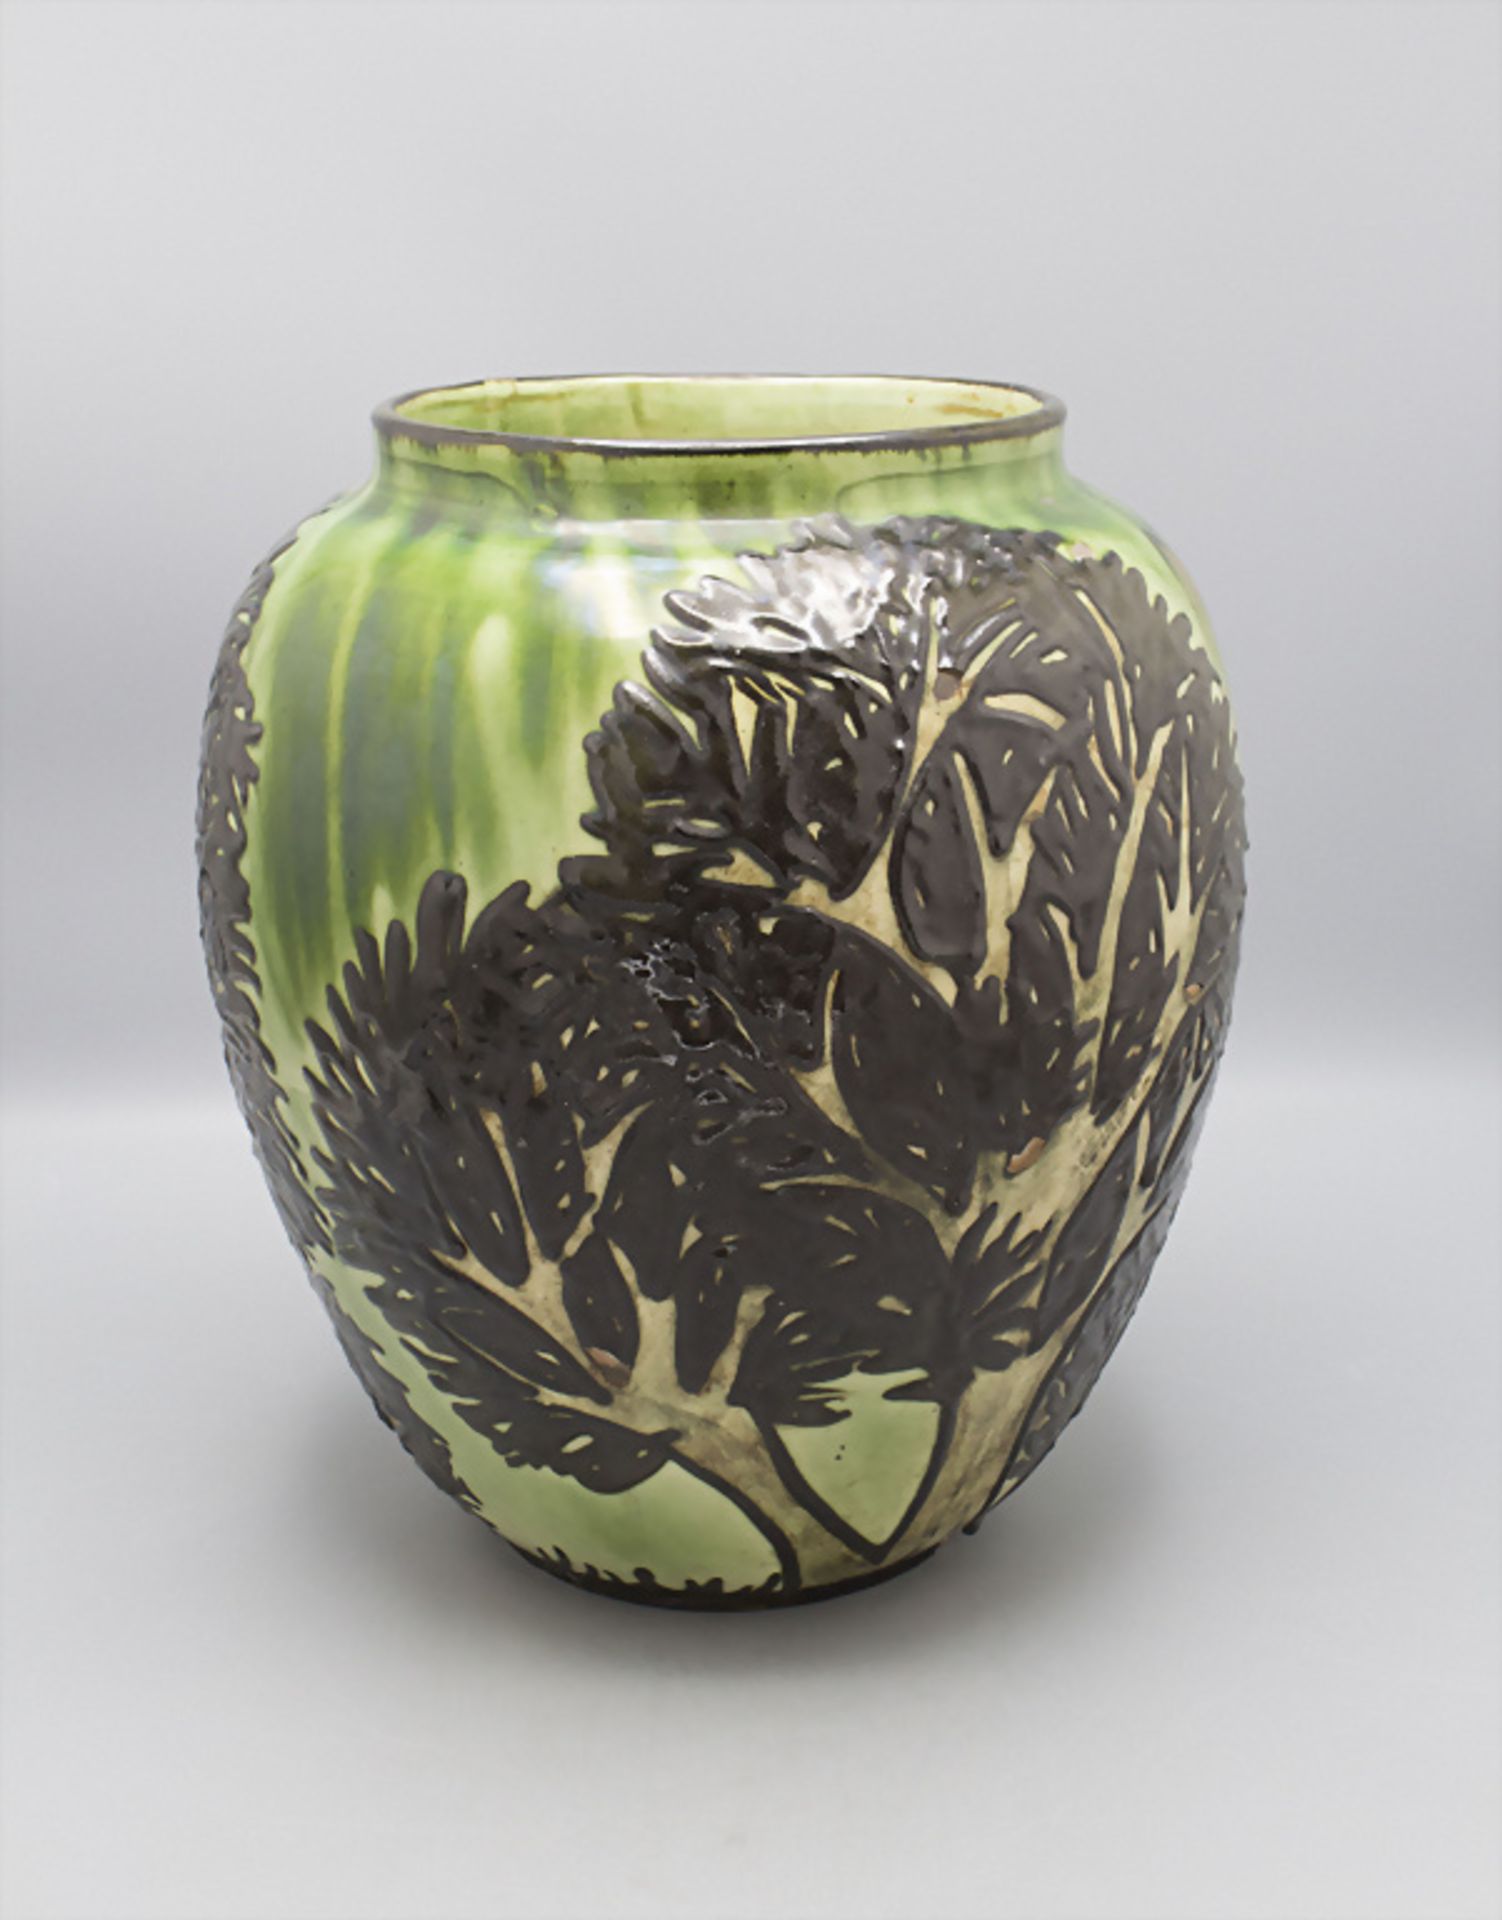 Jugendstil Majolika Vase 'Bäume' / An Art Nouveau majolica vase 'Trees', Max Laeuger, ... - Bild 3 aus 6